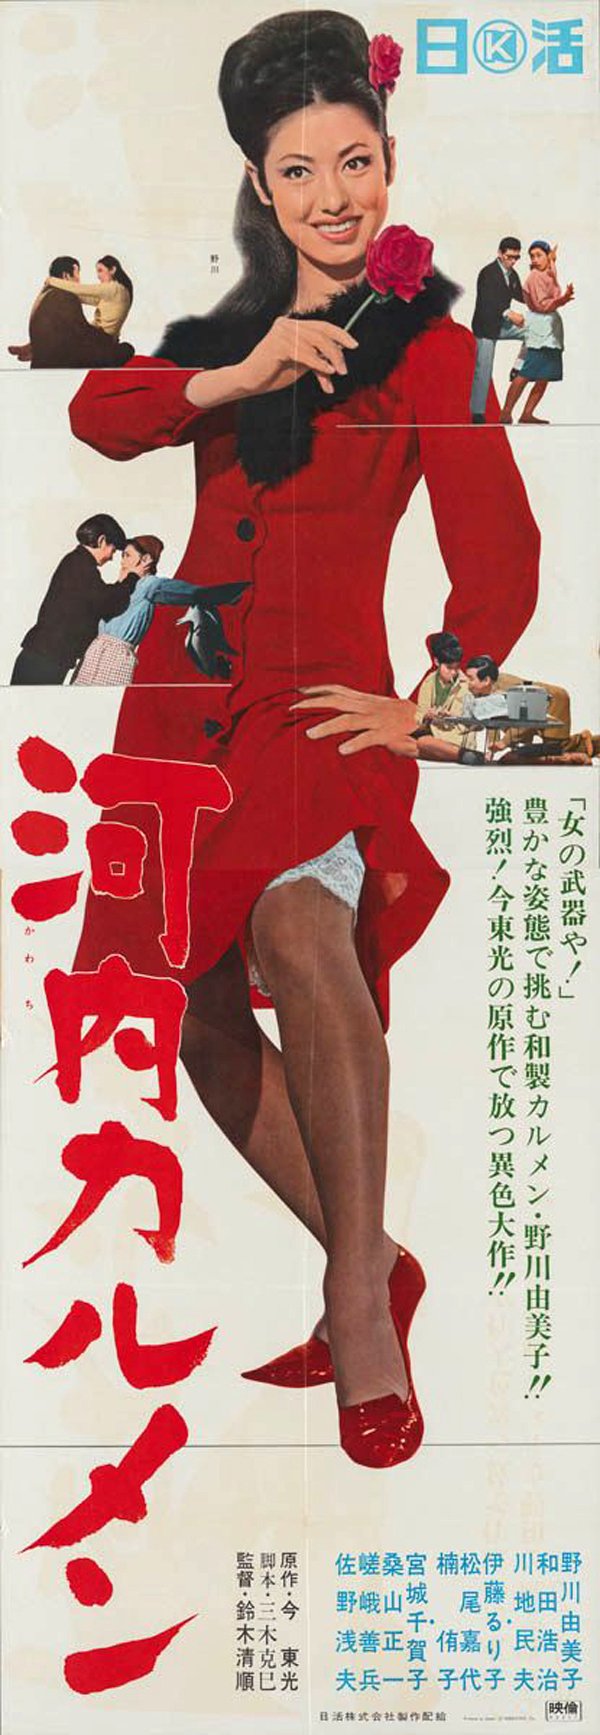 Tony Stella Poster For Carmen From Kawachi 河内カルメン 1966 By Seijunsuzuki 鈴木清順 Yumikonogawa 野川由美子